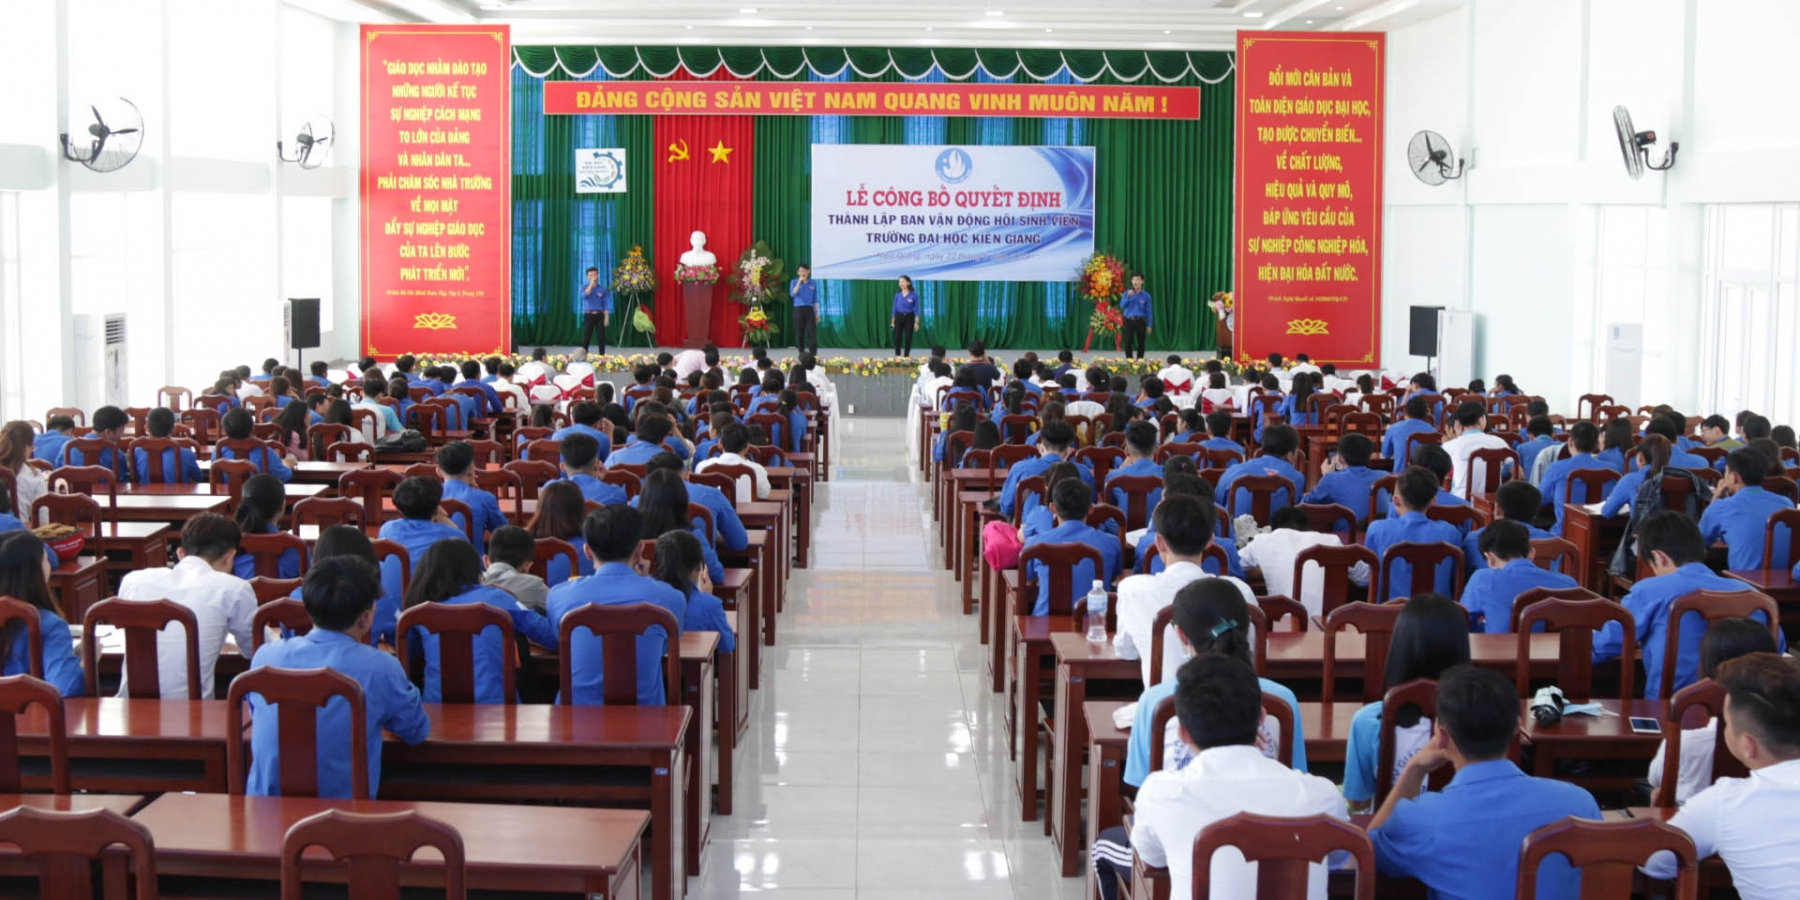 Công bố Quyết định thành lập Ban vận động thành lập Hội sinh viên Trường Đại học Kiên Giang